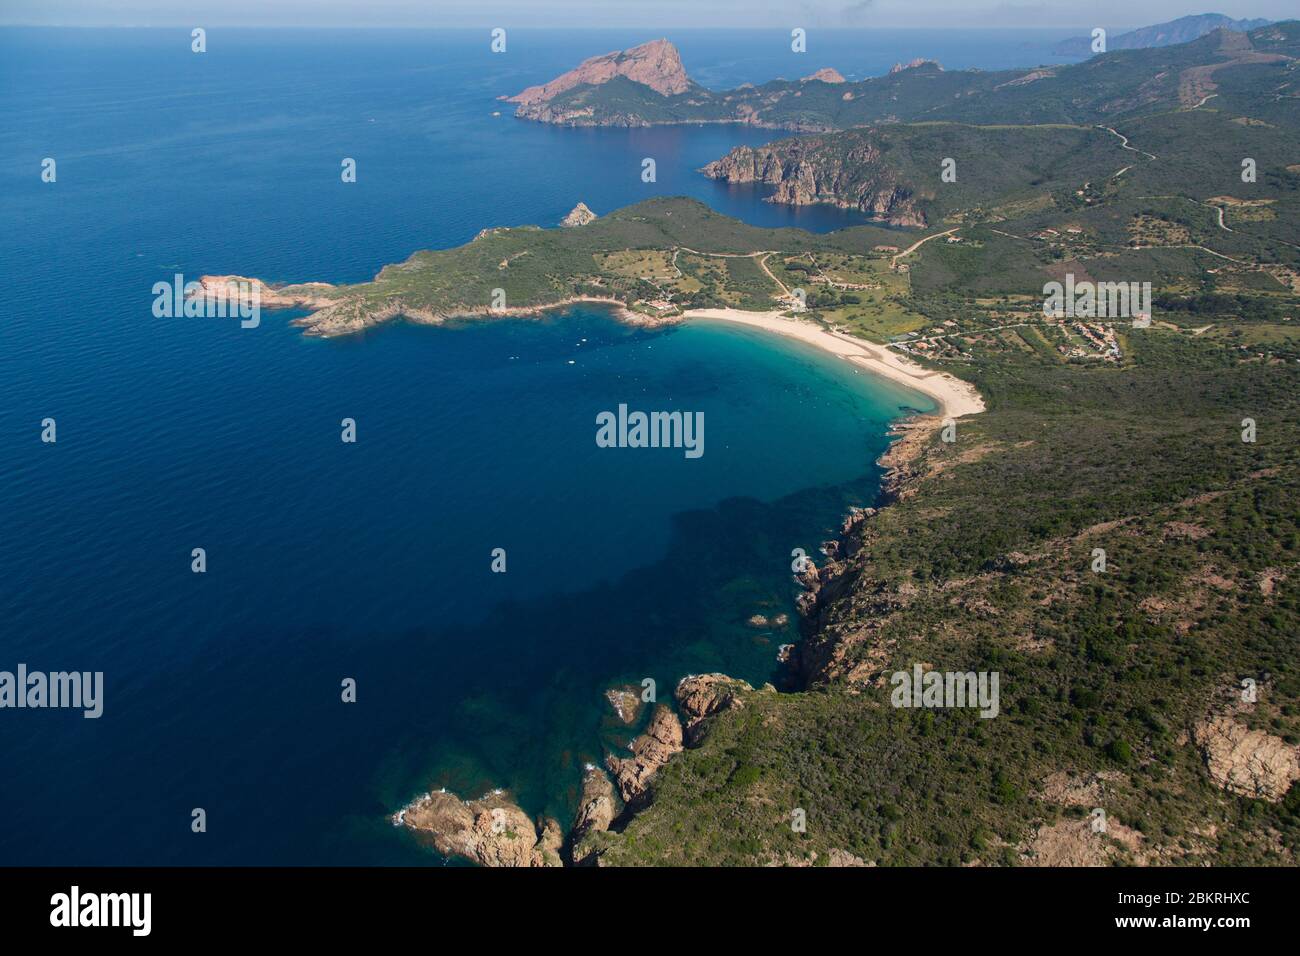 Francia. Corse du Sud, comune di piana, spiaggia di Arone, Capo Rosso o Capu Rossu, sito naturale classificato come Patrimonio dell'Umanità dall'UNESCO (vista aerea) Foto Stock